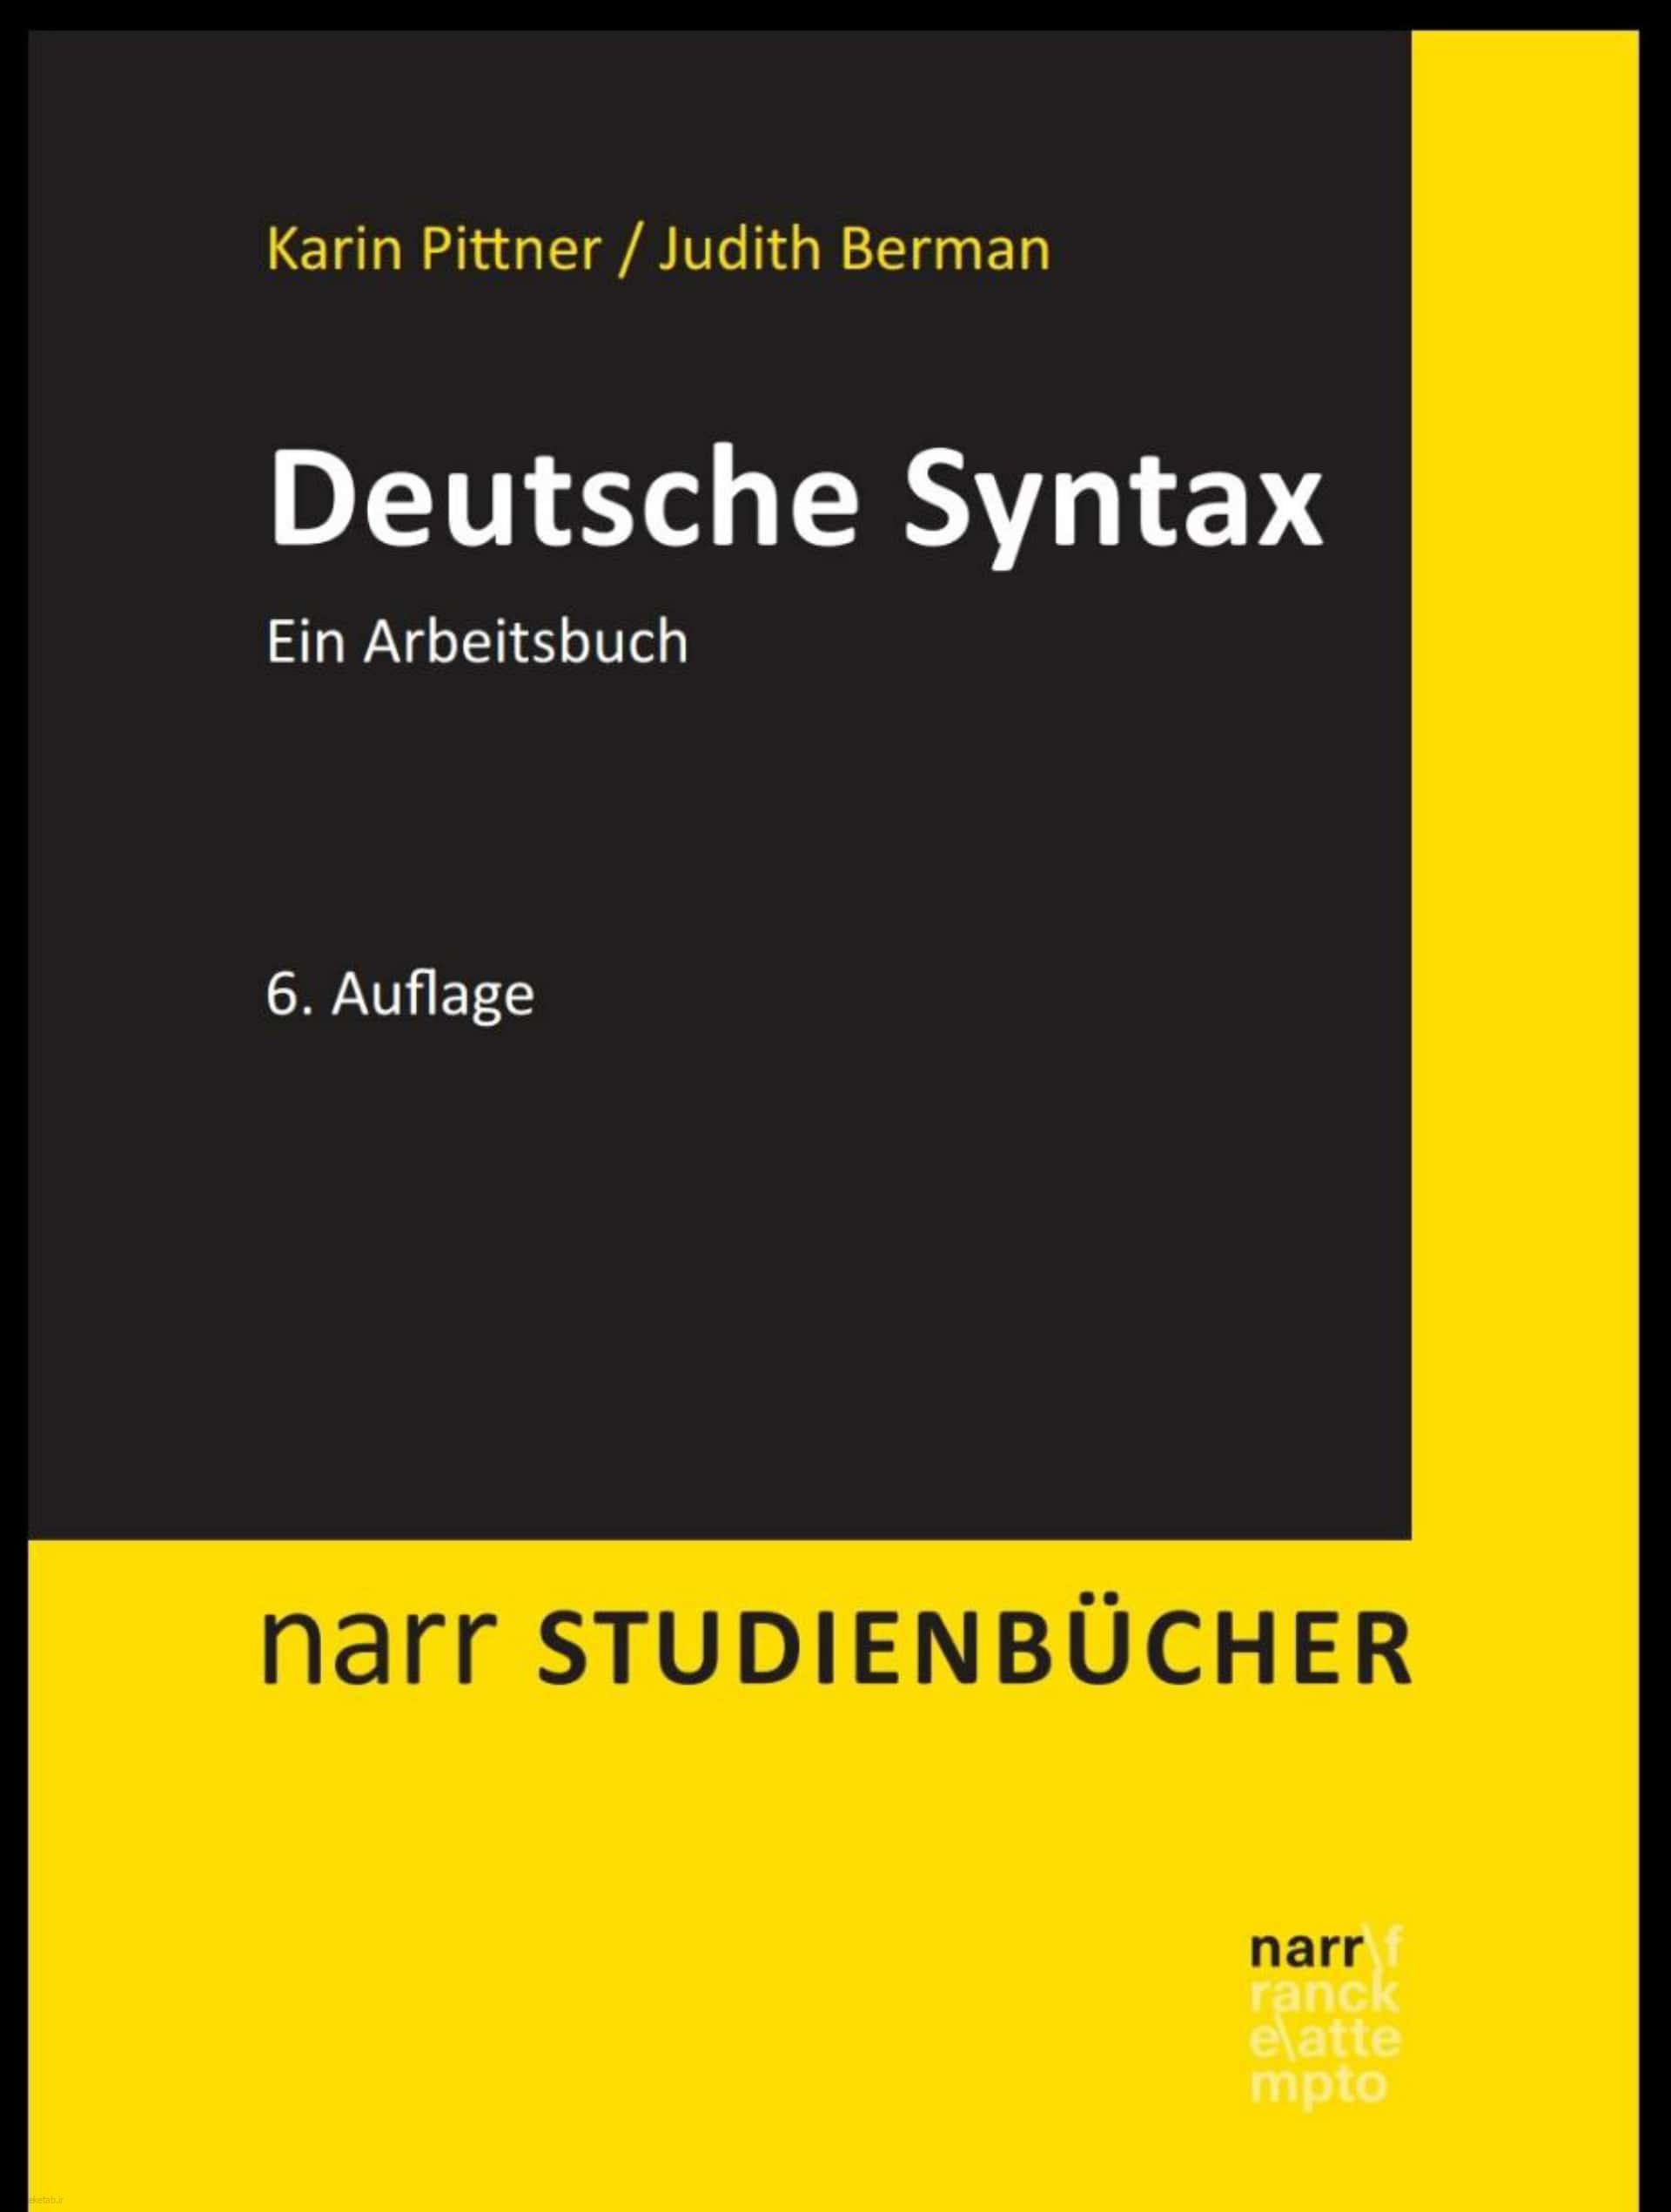 دانلود کتاب آلمانیdeutsche syntax